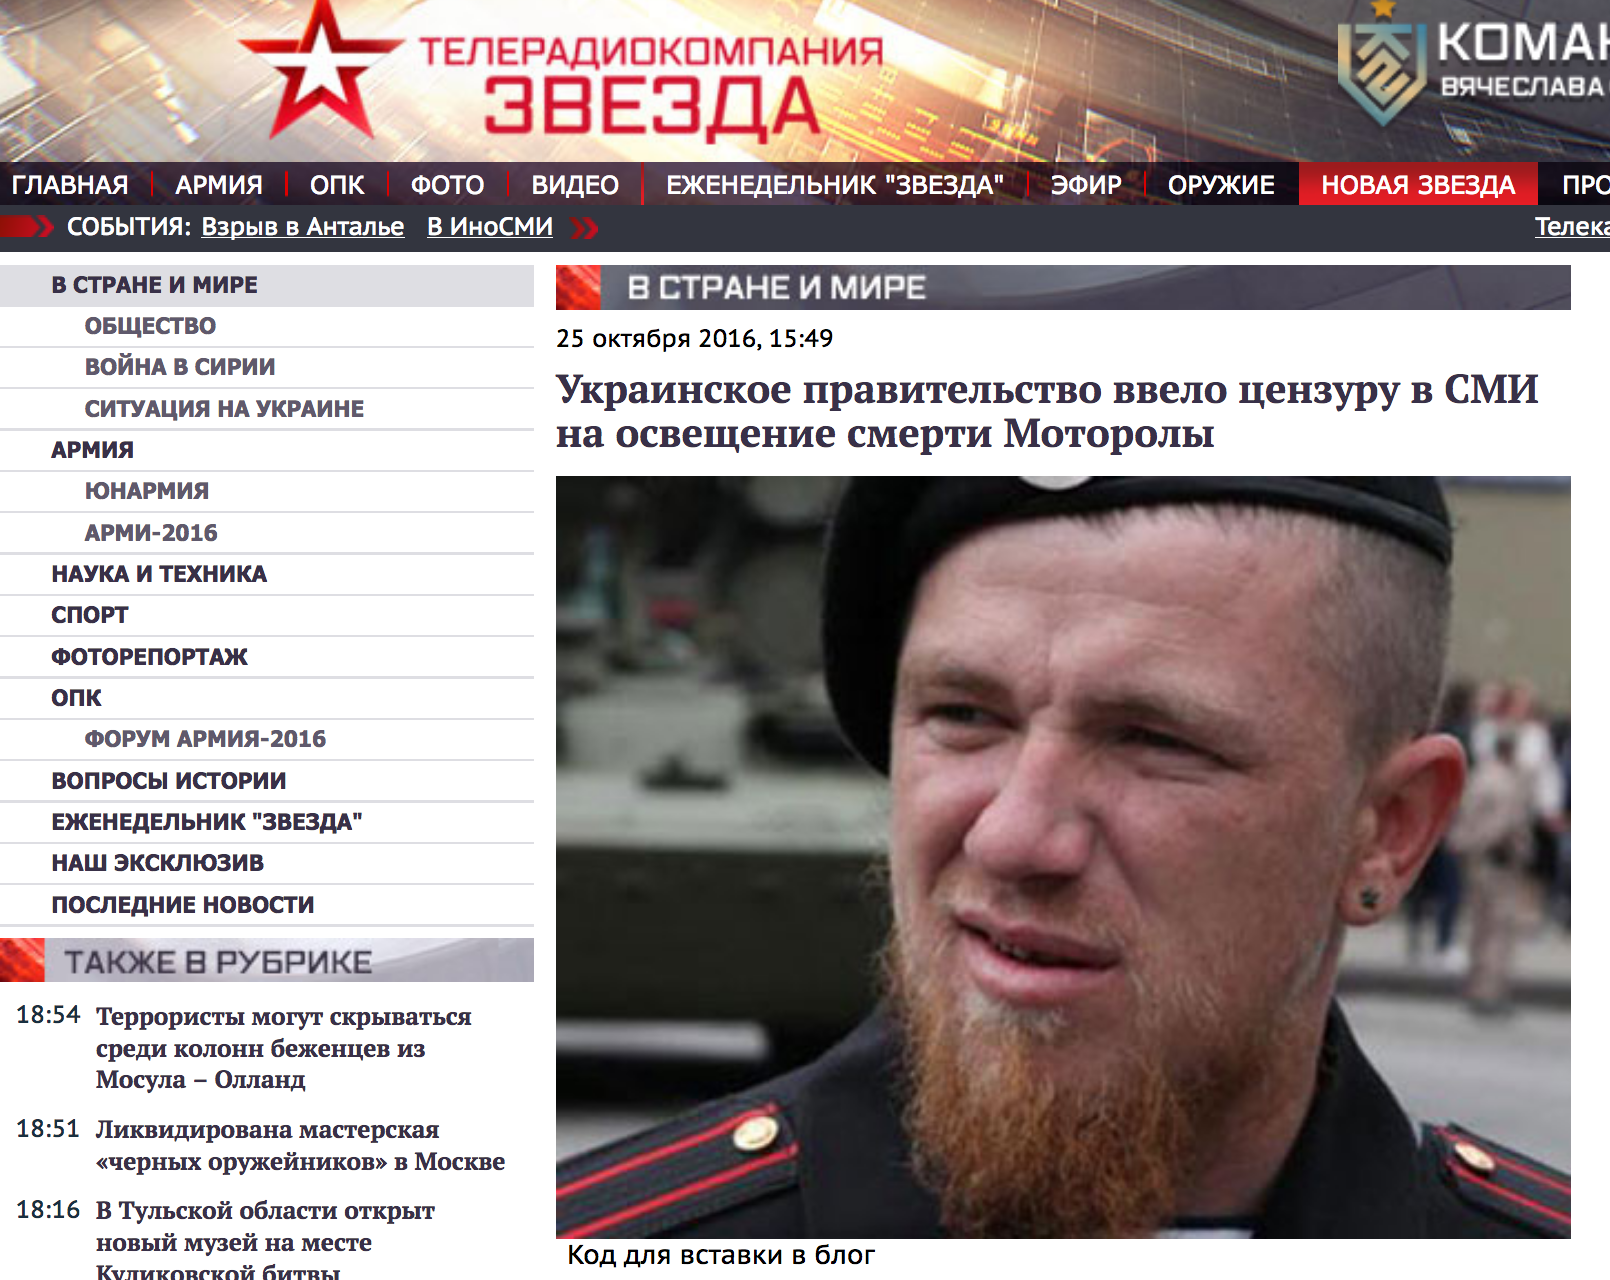 TV Zvezda: Las autoridades ucranianas introdujeron censura noticias sobre el asesinato de “Motorola”